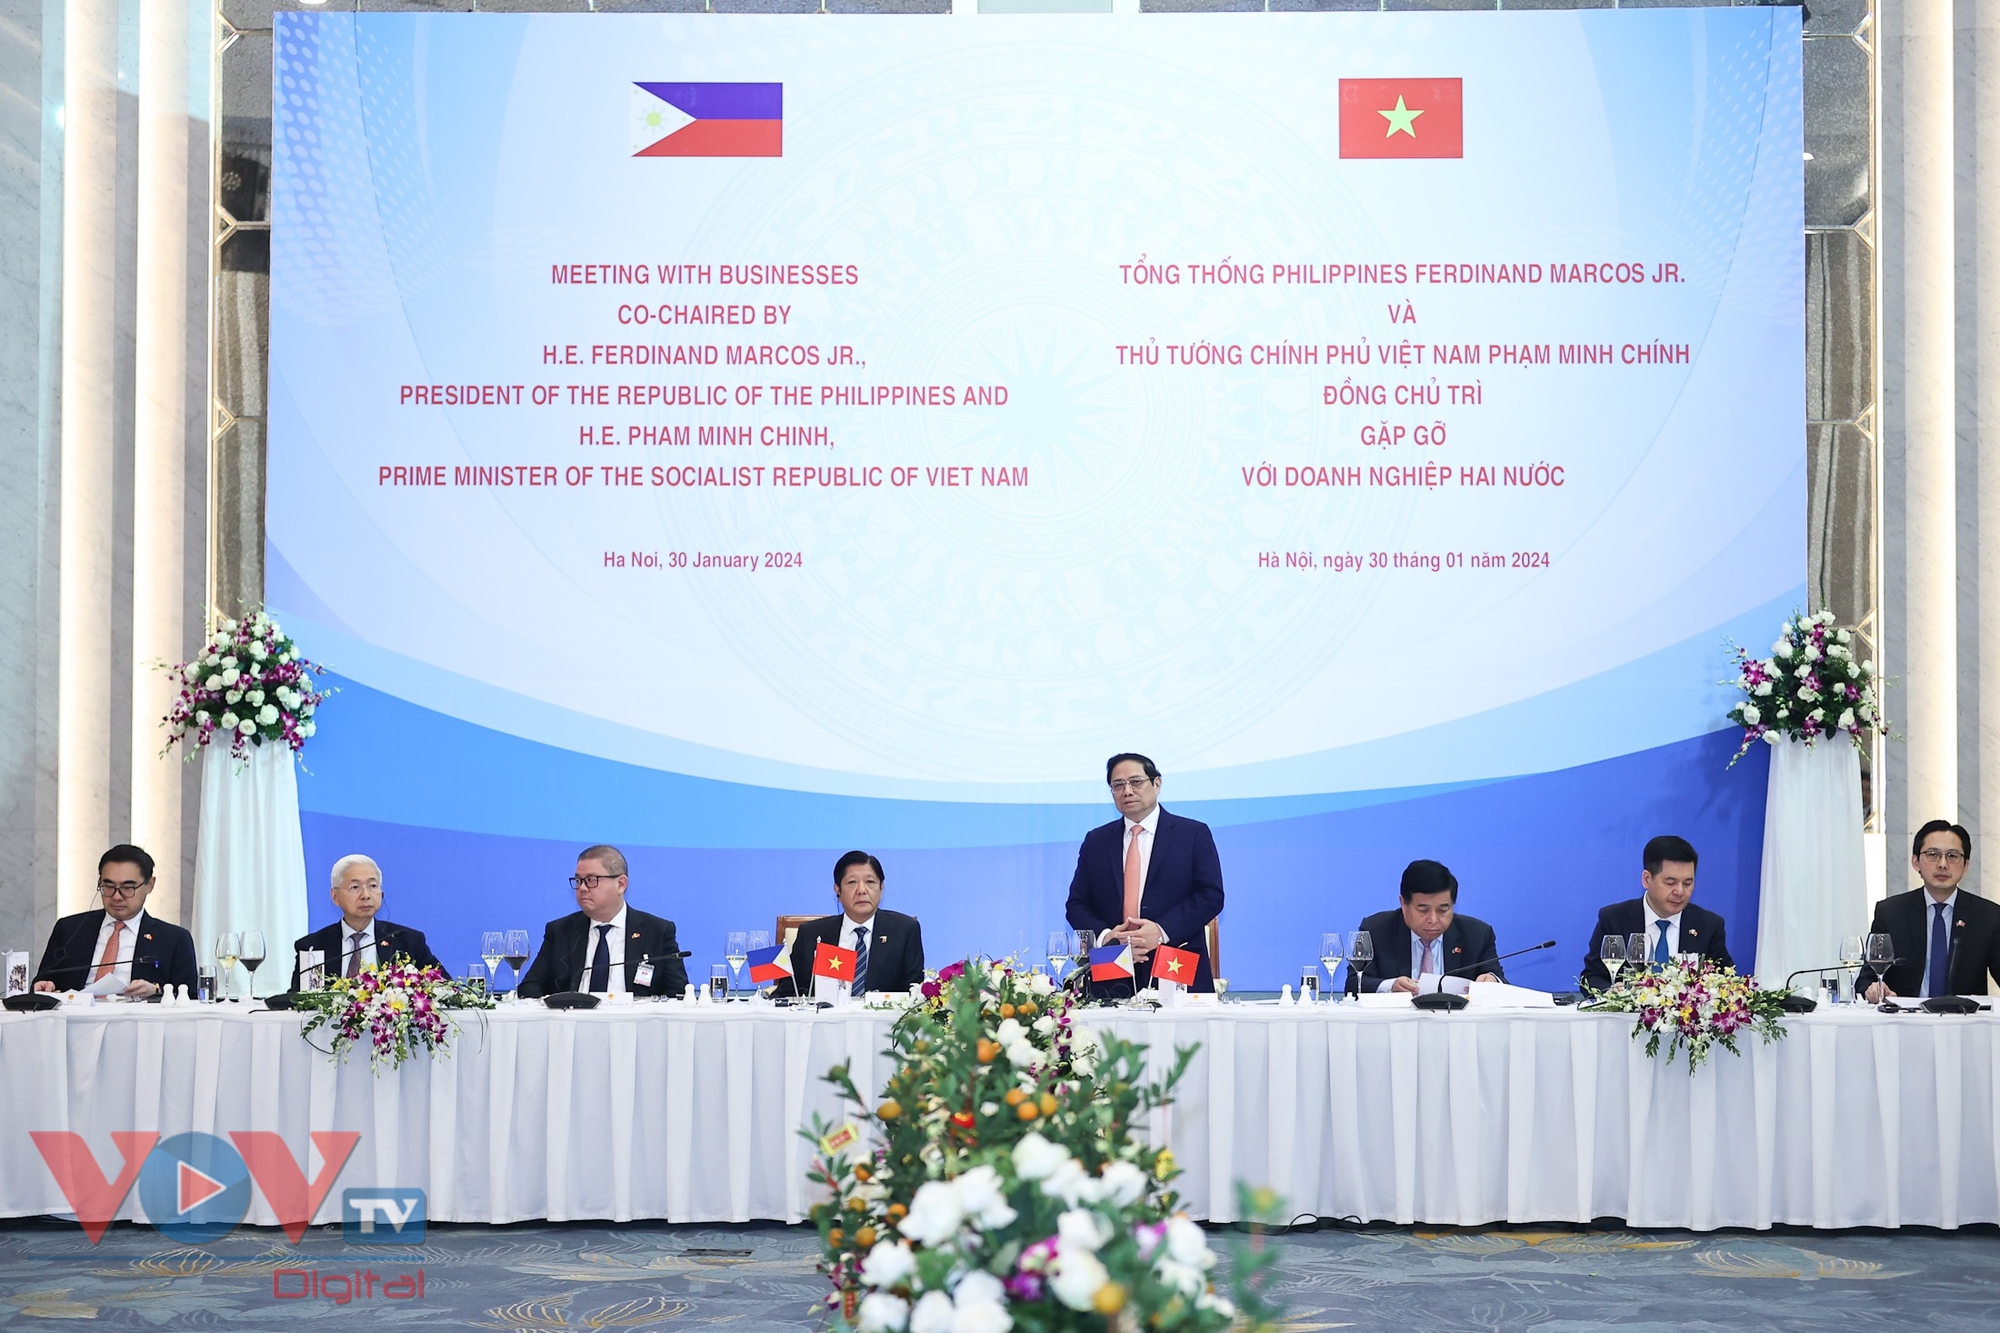 Thủ tướng Phạm Minh Chính và Tổng thống Philippines gặp gỡ các doanh nghiệp tiêu biểu hai nước- Ảnh 2.